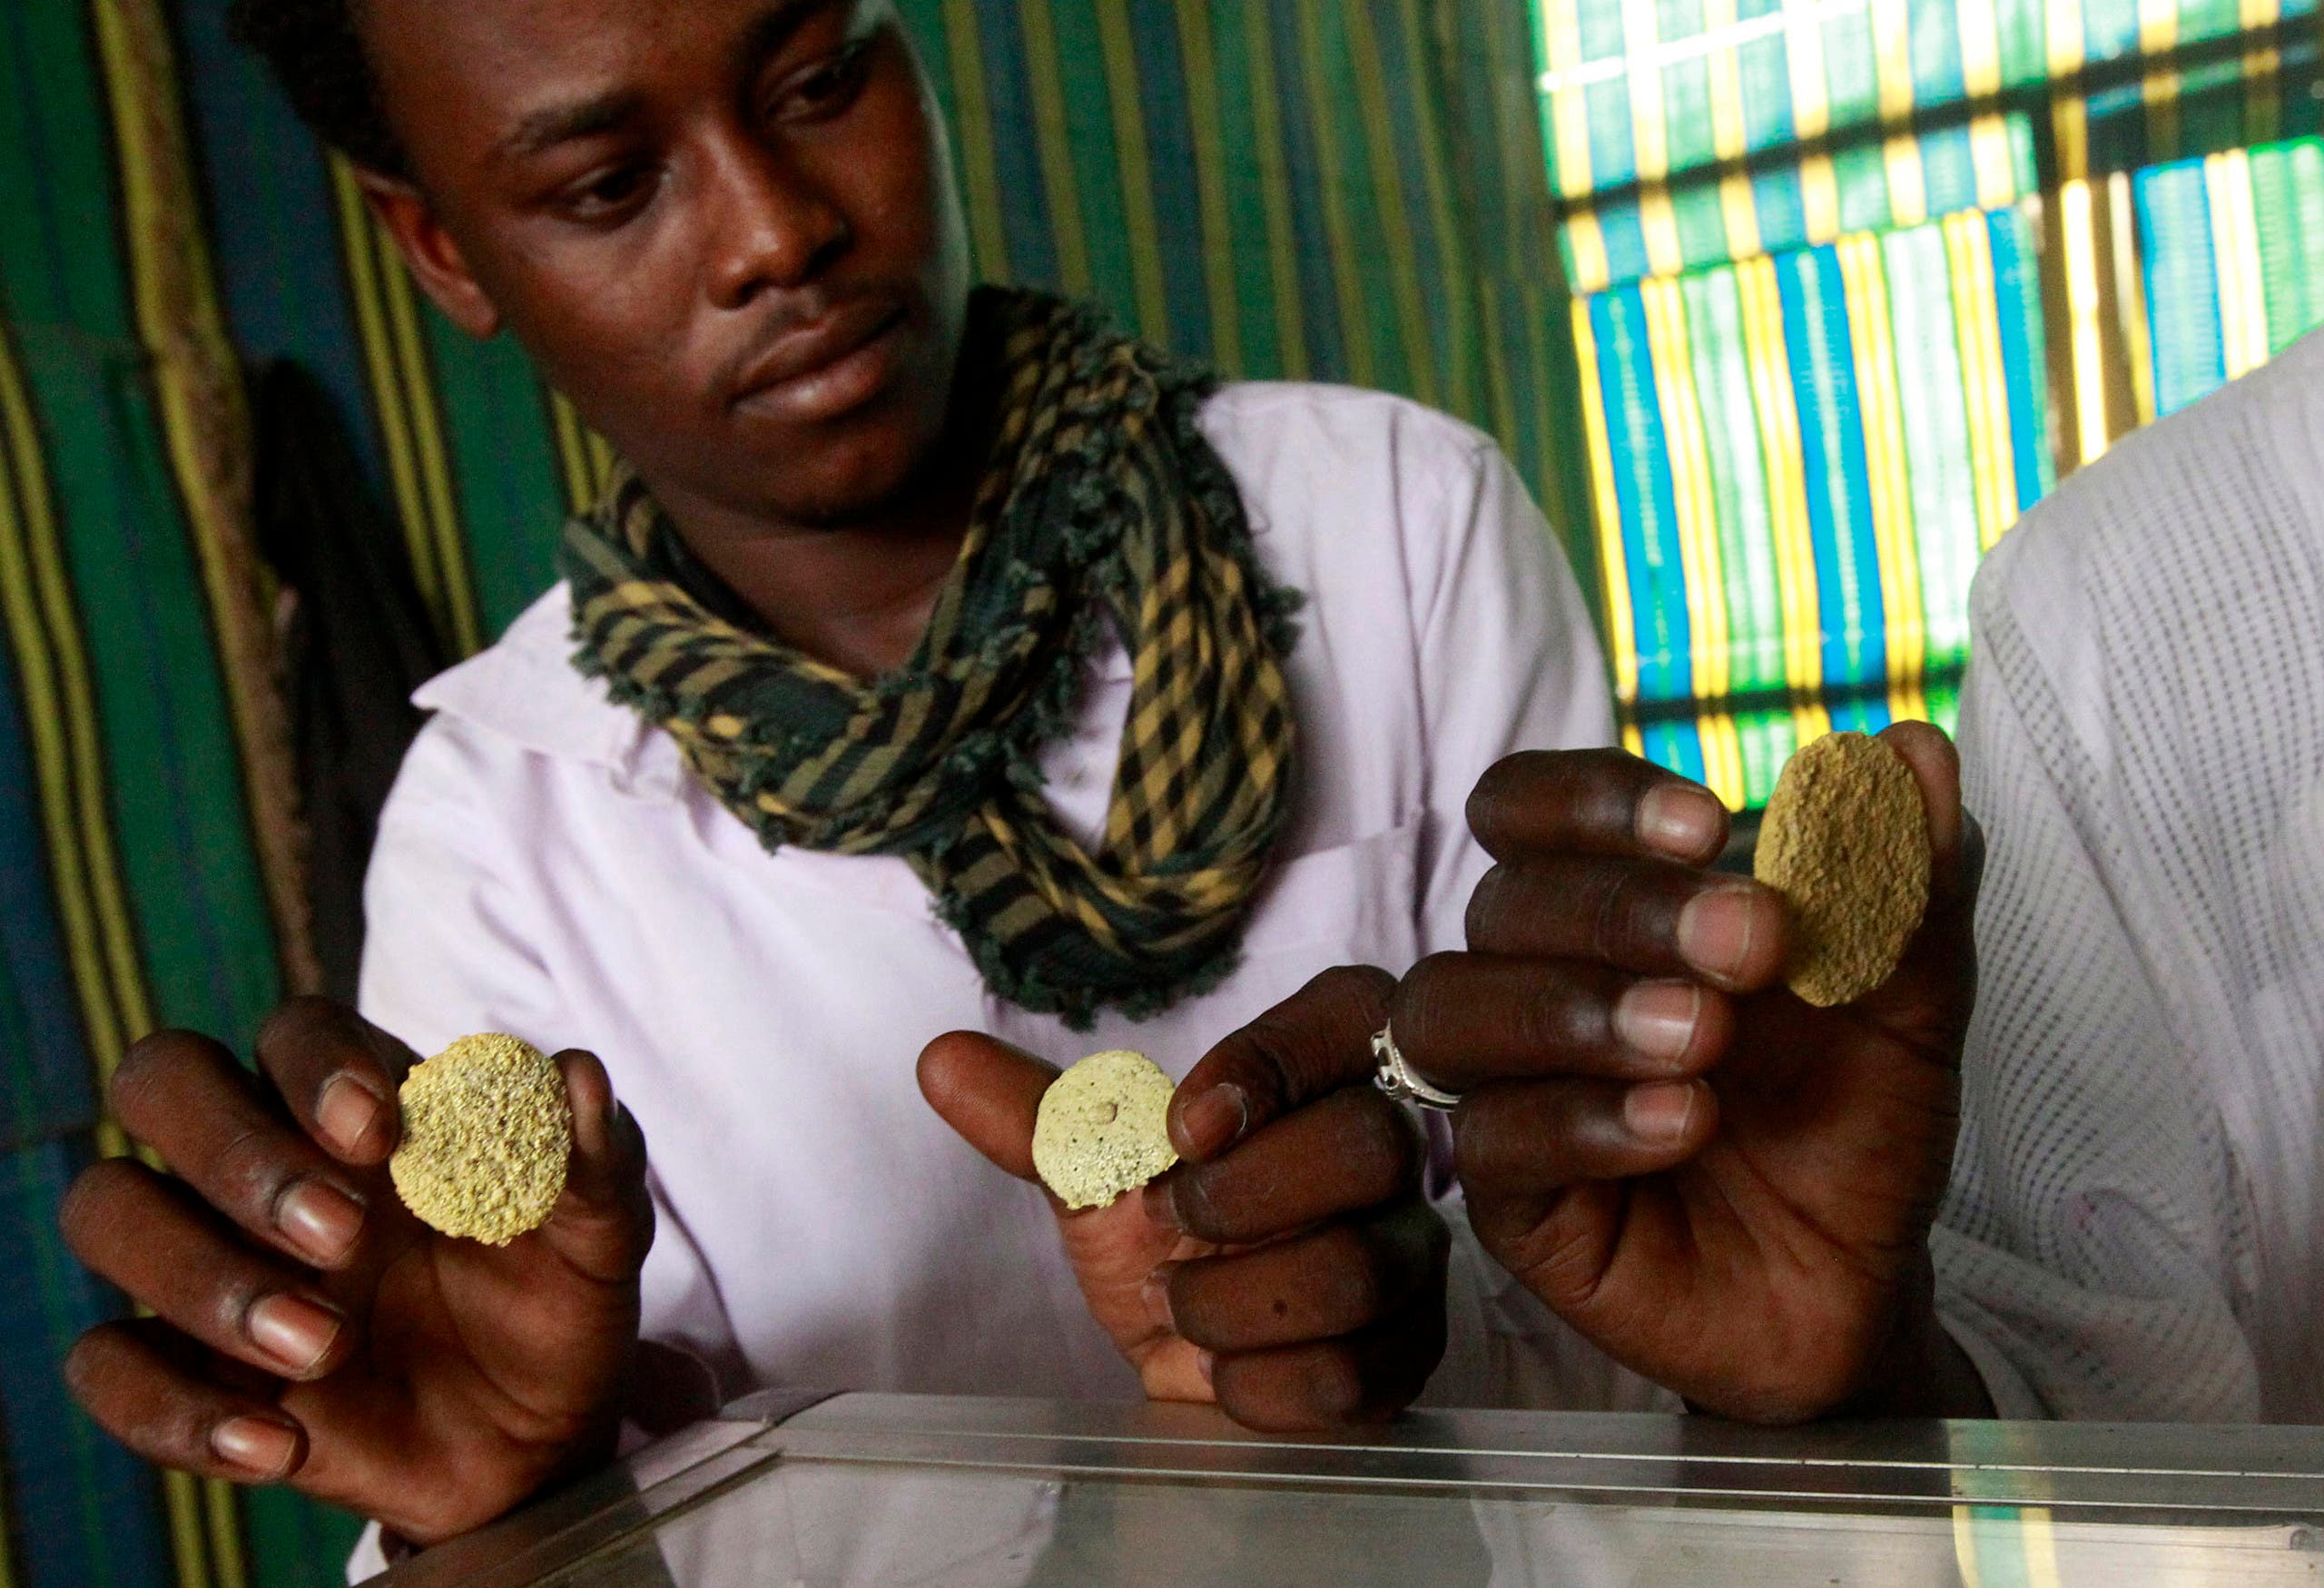 عمال منجم في السودان يظهرون الذهب الذي استخرجوه (أرشيفية)